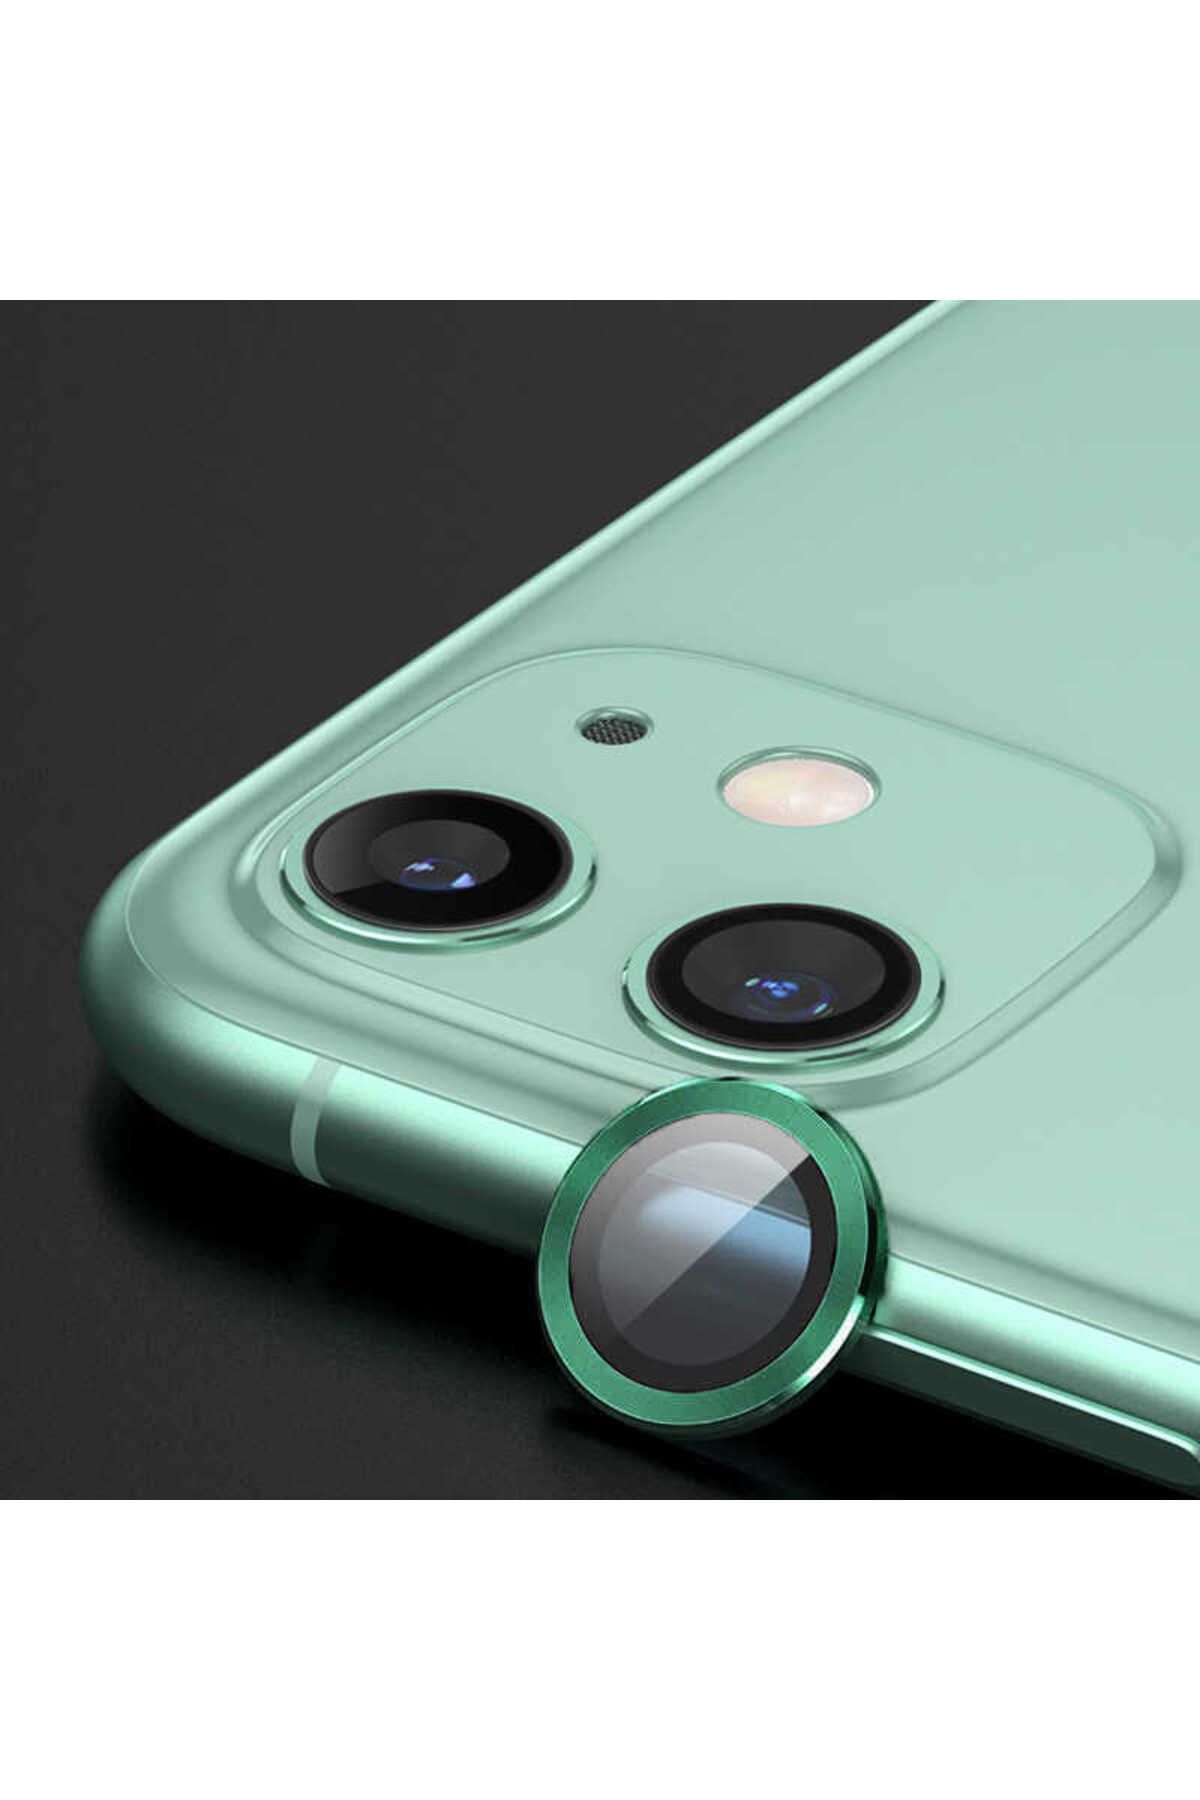 Zore iPhone 12 Uyumlu YSF CL-02 Kamera Lens Koruyucu-Yeşil